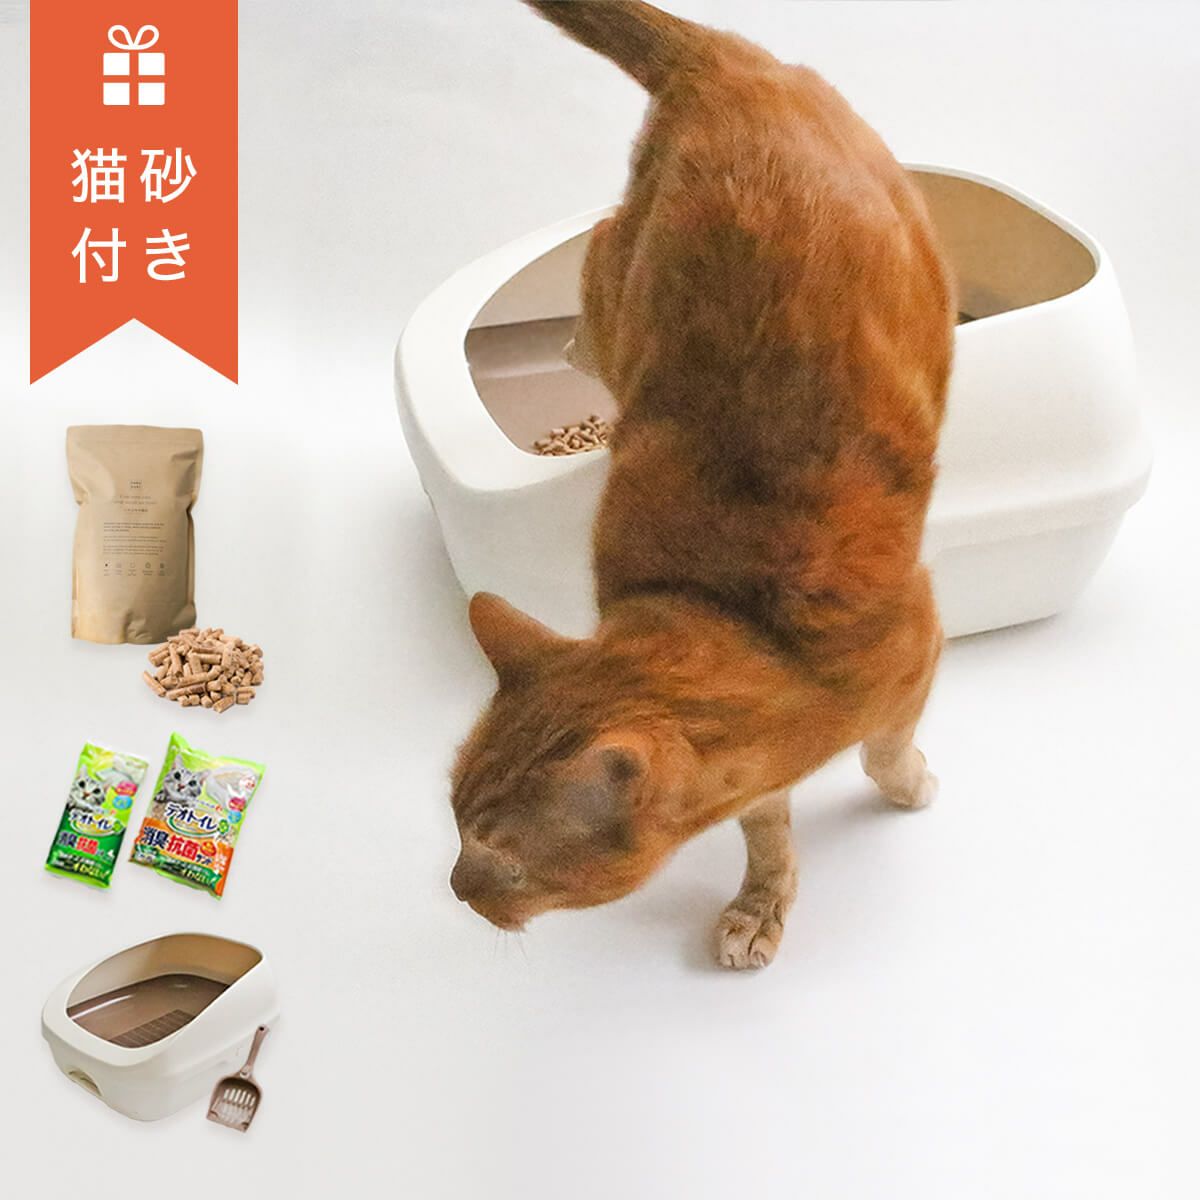 デオトイレ すのこ式 猫 トイレセット シート 消臭サンド 猫砂 Nekozuki ねこずき 猫用品の販売